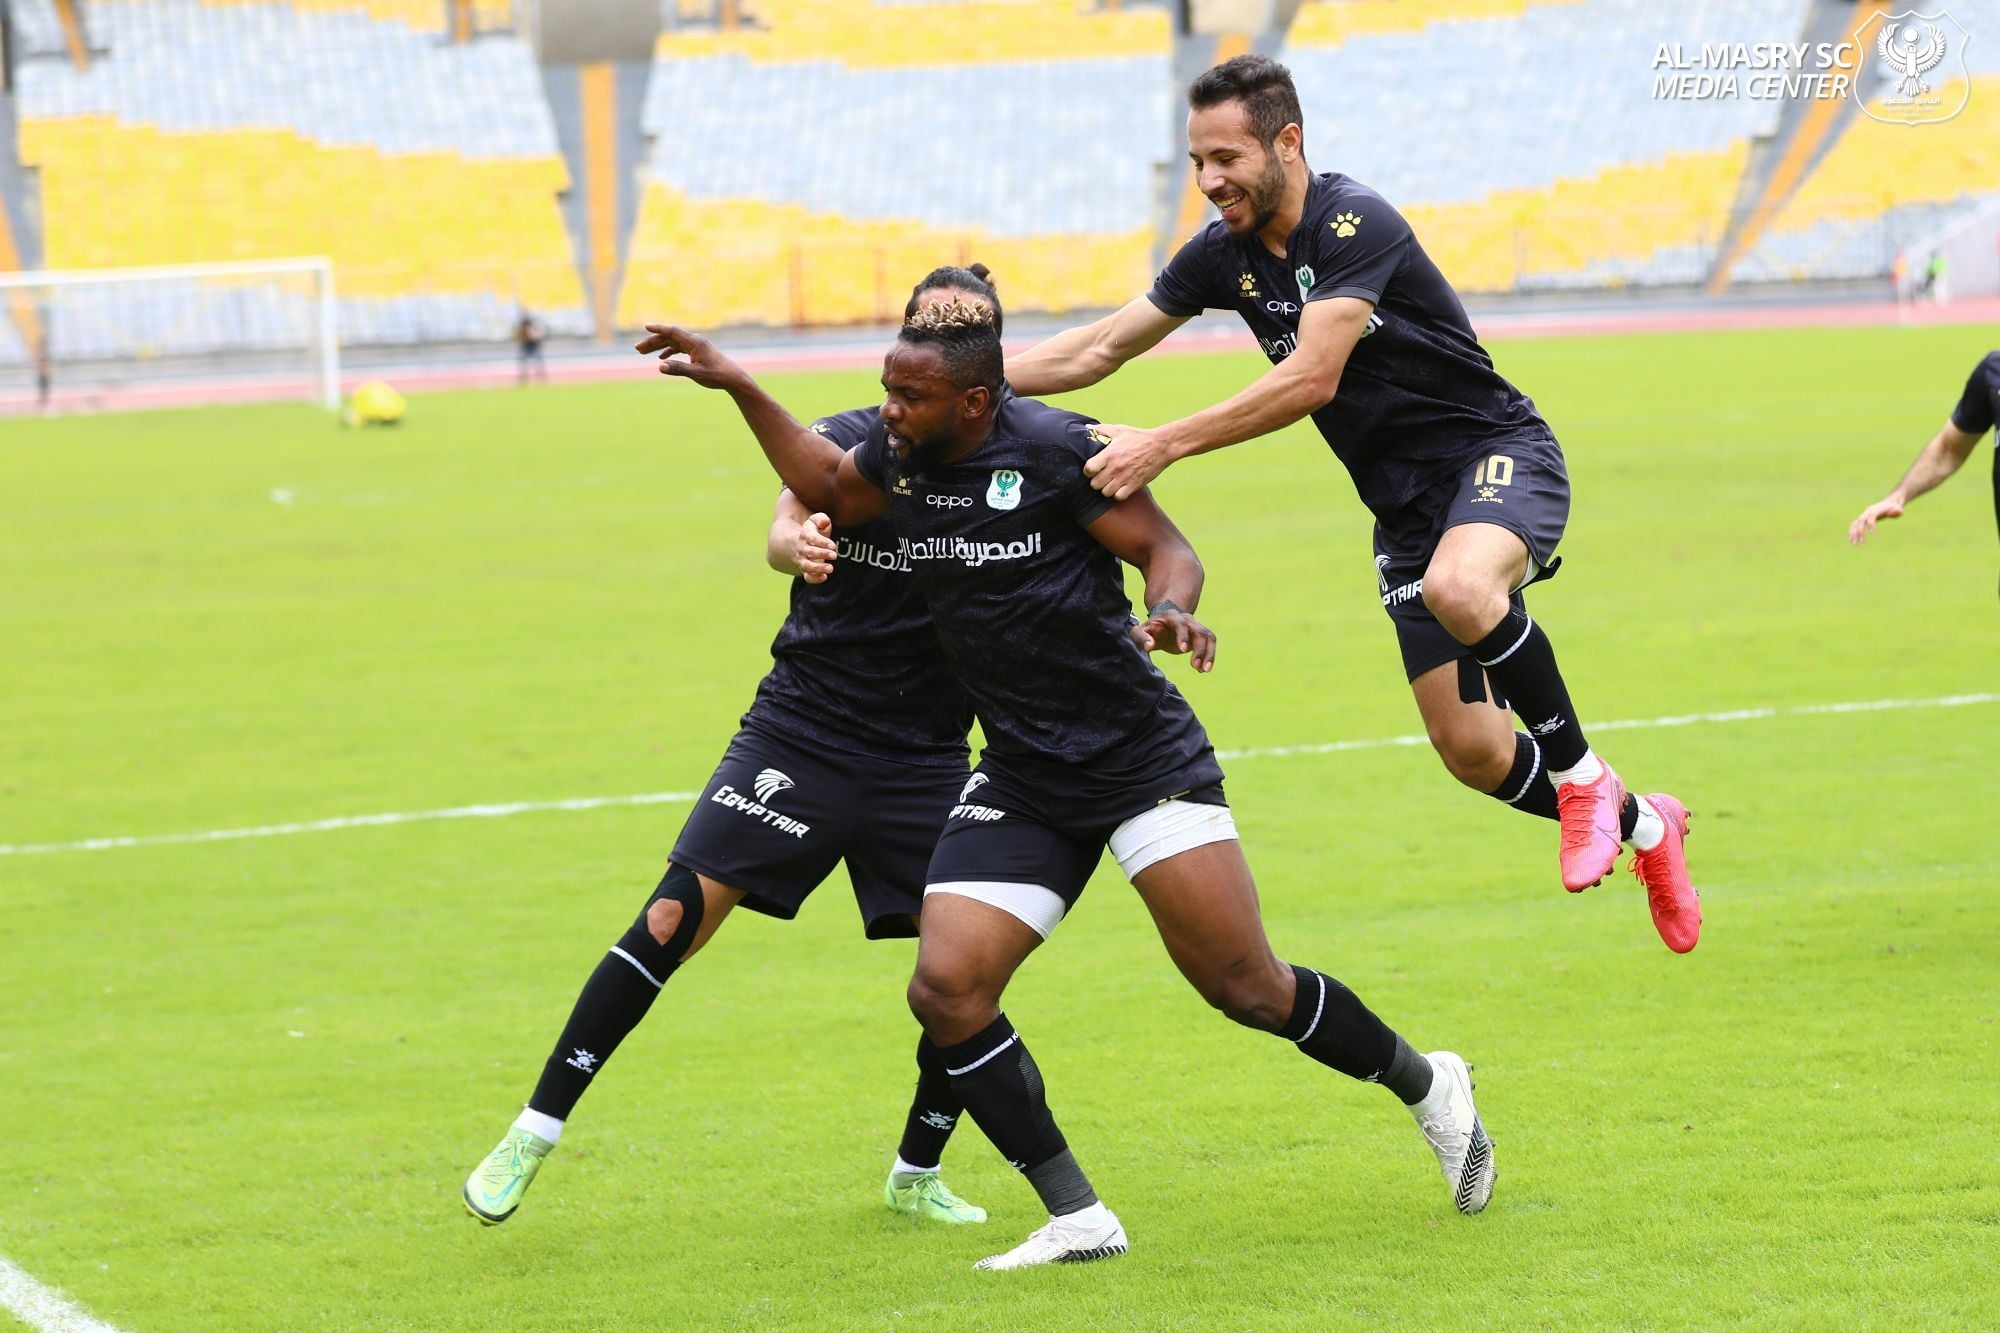 المصري البورسعيدي يتعادل مع إيسترن كومباني إيجابيًا في الدوري المصري